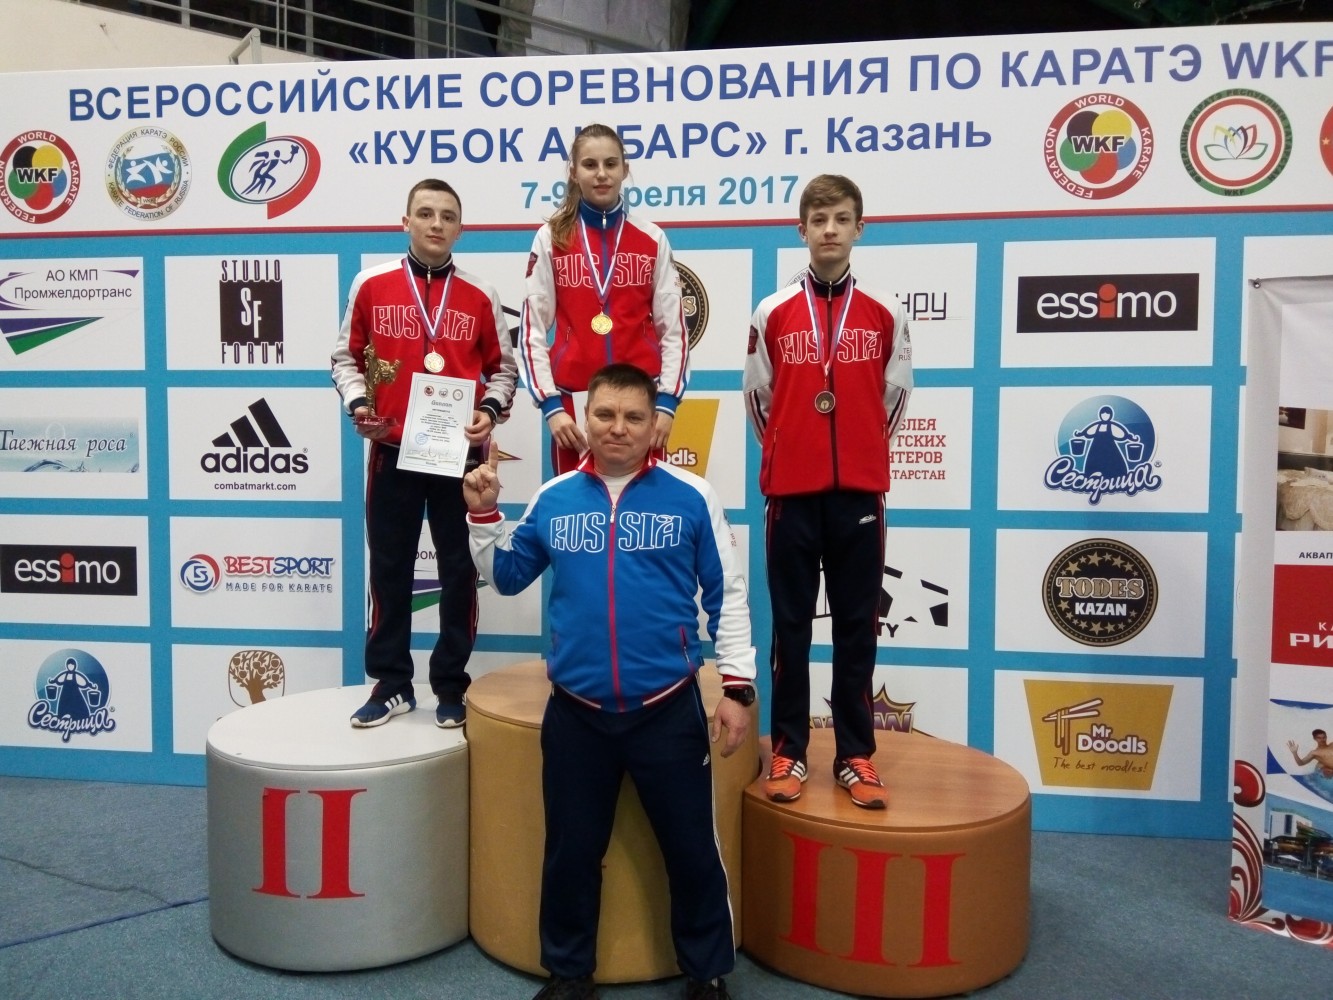  Всероссийские соревнования по каратэ